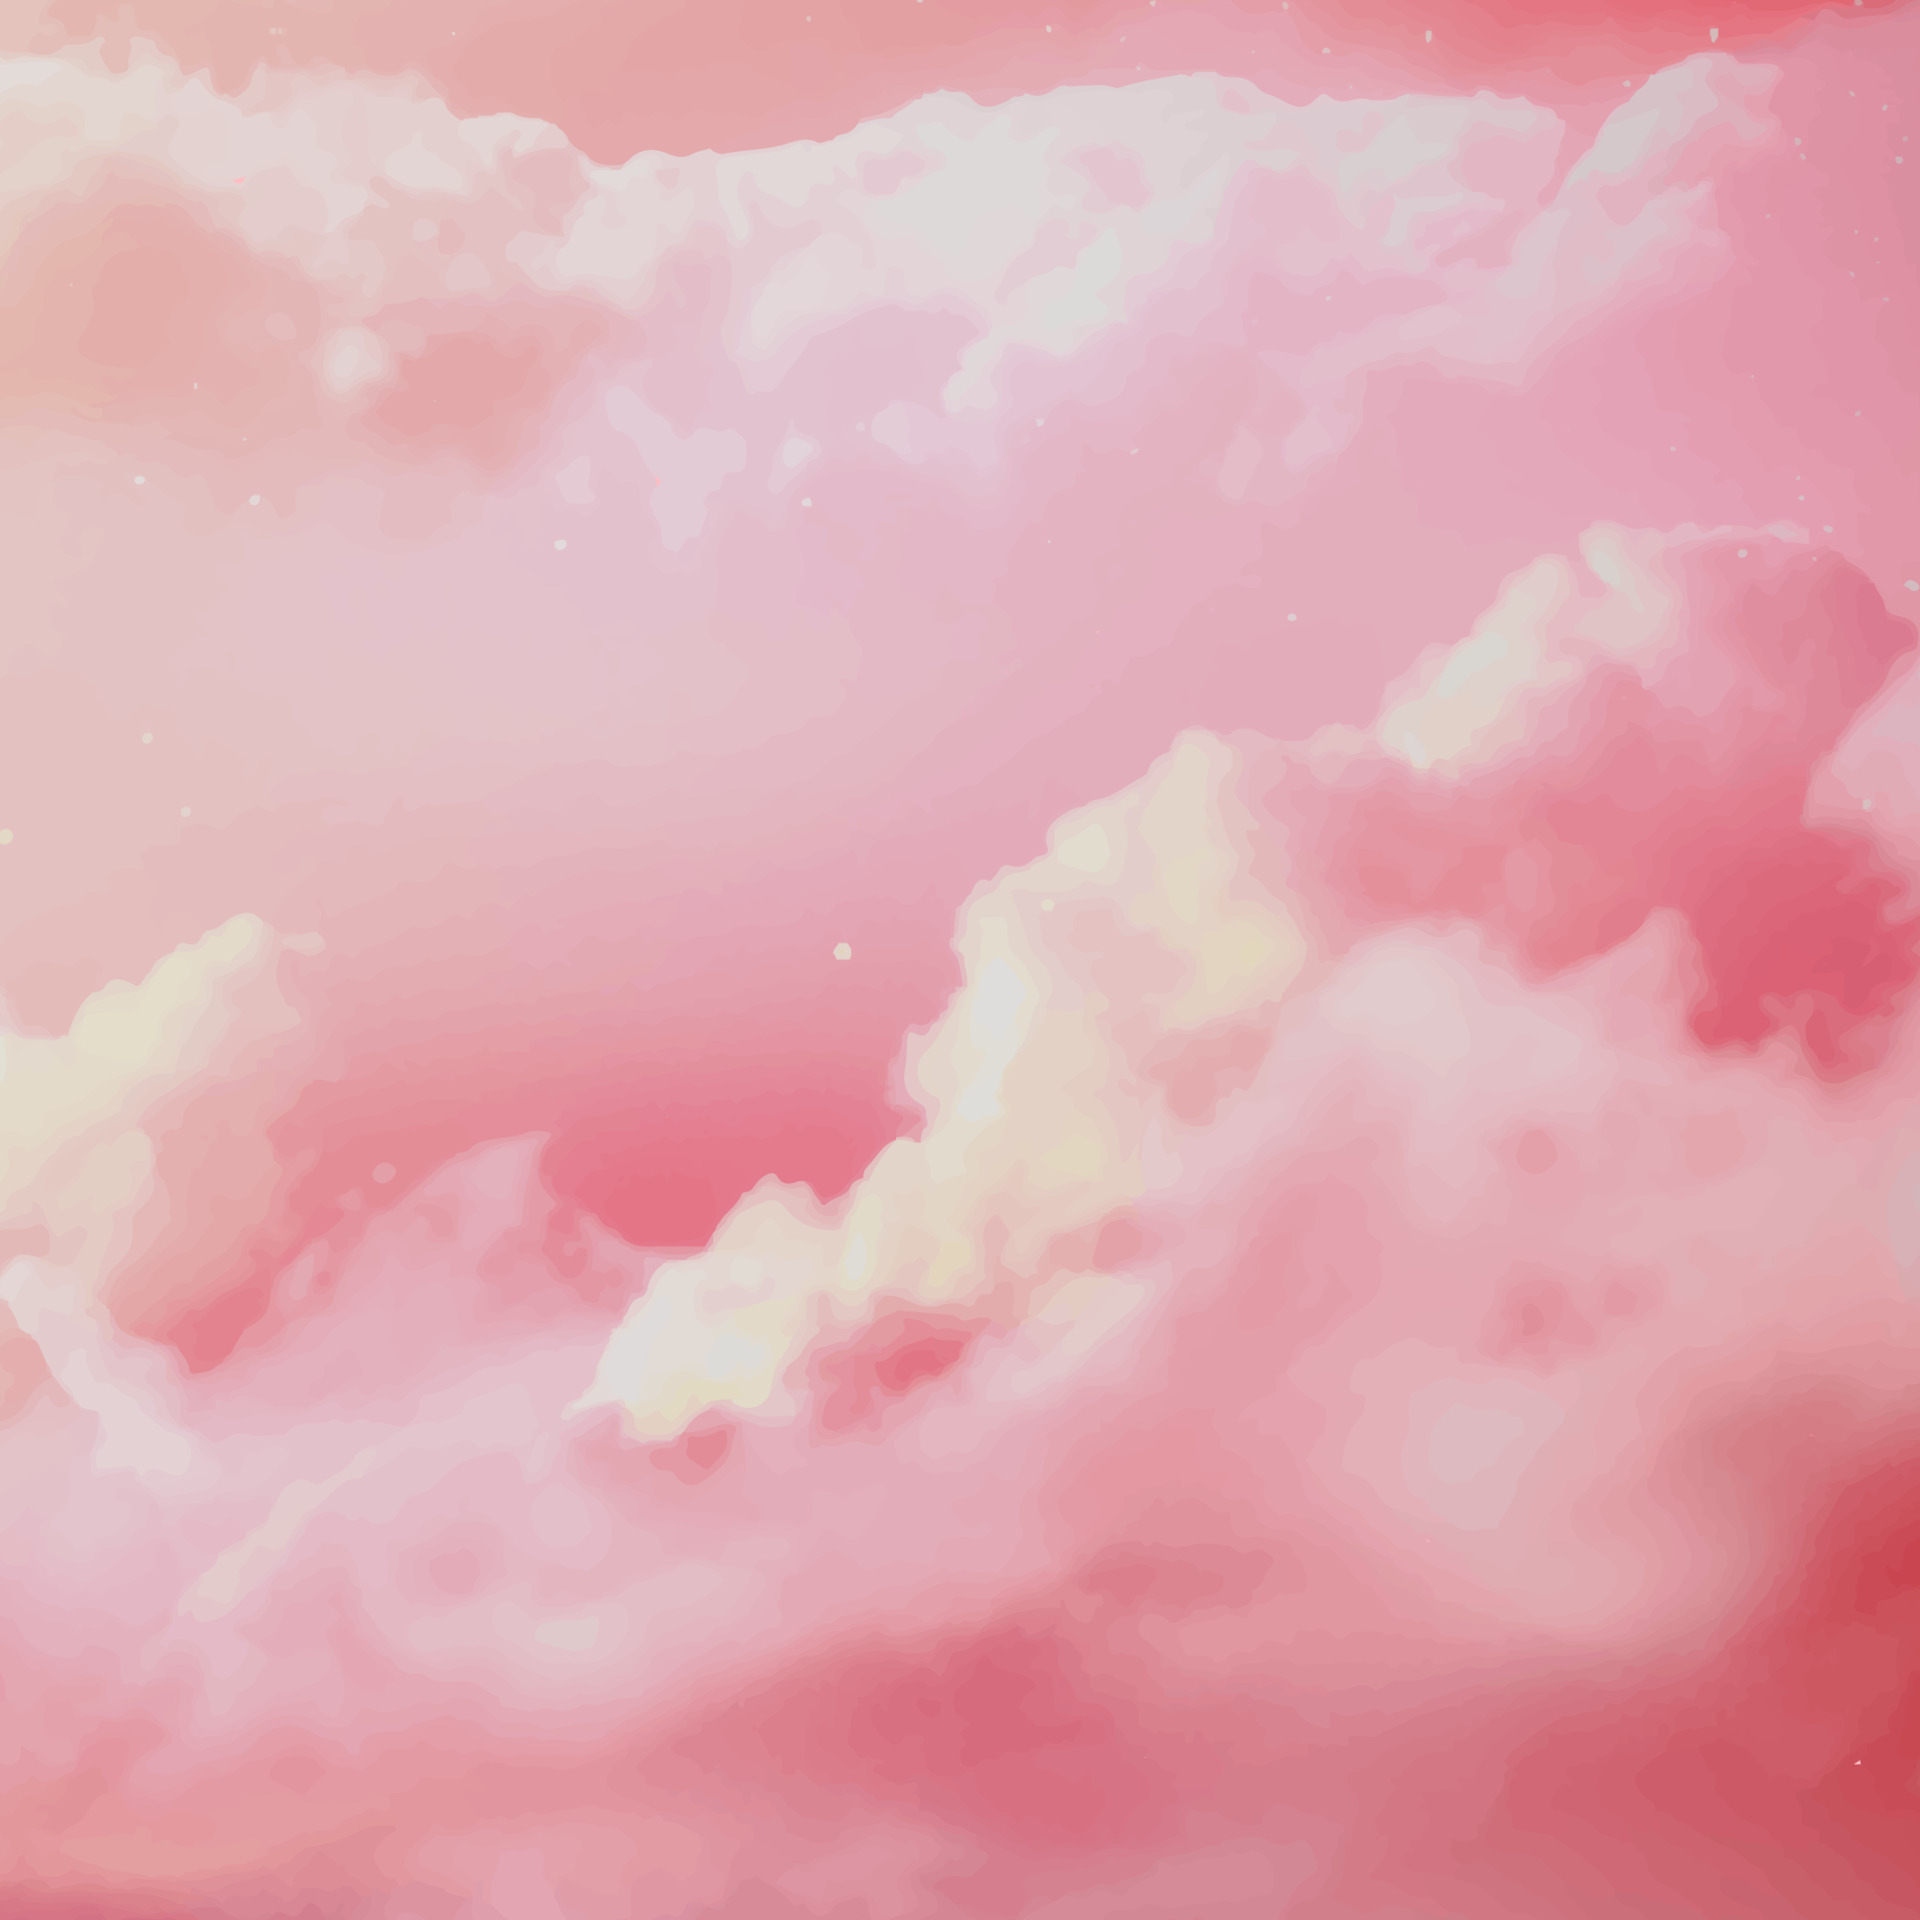 Bạn đã bao giờ thưởng thức cảnh tượng mây hồng đầy sắc màu trong nước đục chưa? Hãy đón xem hình ảnh này để cảm nhận được sự huyền ảo, độc đáo của thiên nhiên với mây hồng nước đục.